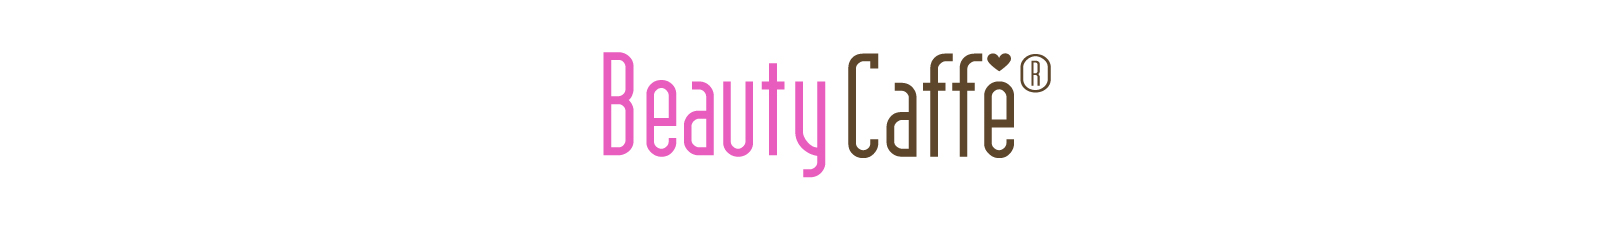 BeautyCaffe-Banner